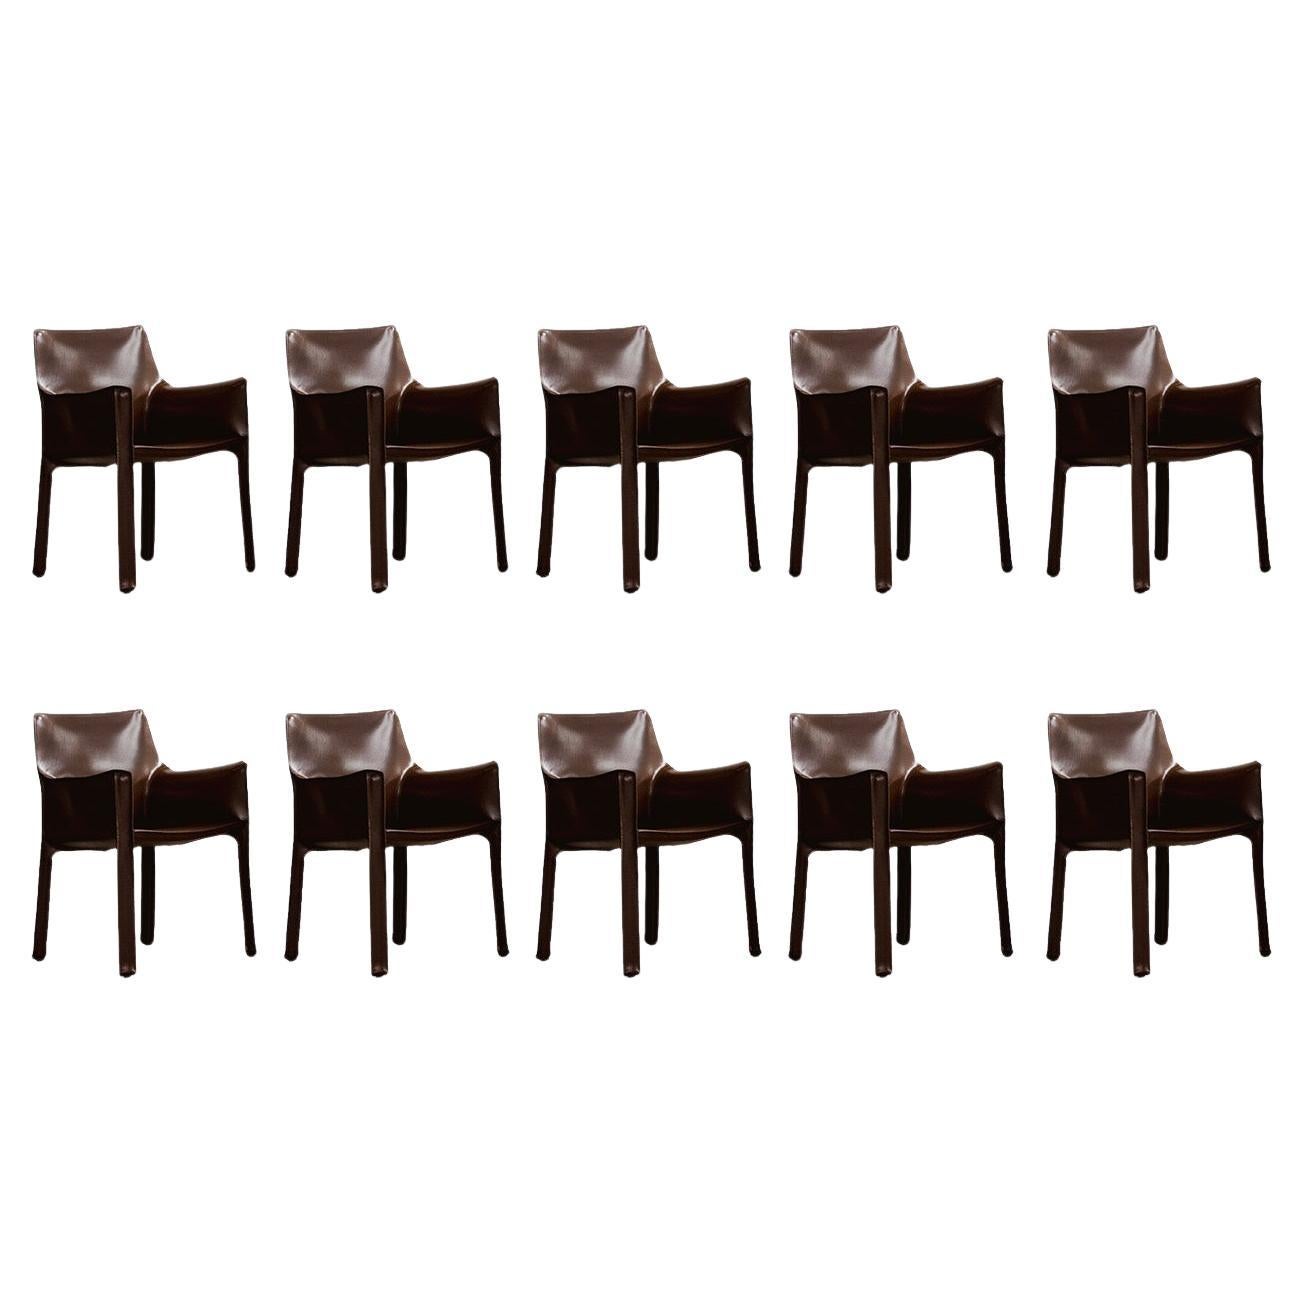 Mario Bellini pour Cassina, 1977, lot de 10 chaises de salle à manger CAB 413